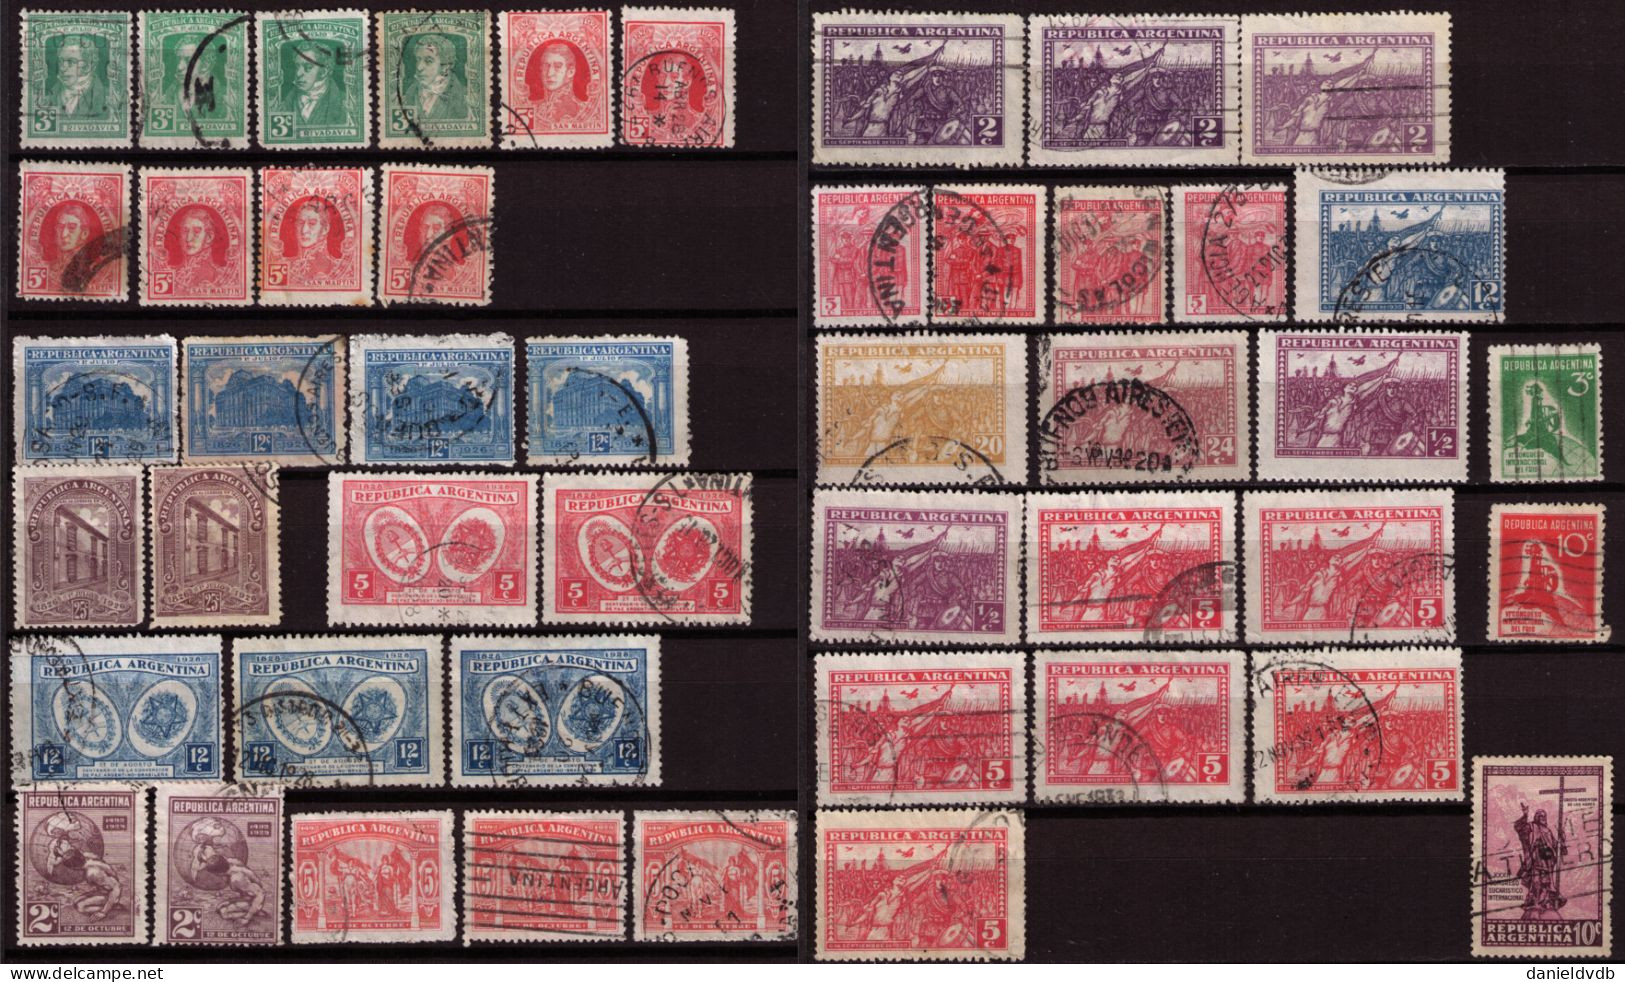 Argentine 1888-1934 Collection Oblitérée Avec Multiples Filigranes, Papiers, Dentelures, Tirages, ... - Collections, Lots & Séries